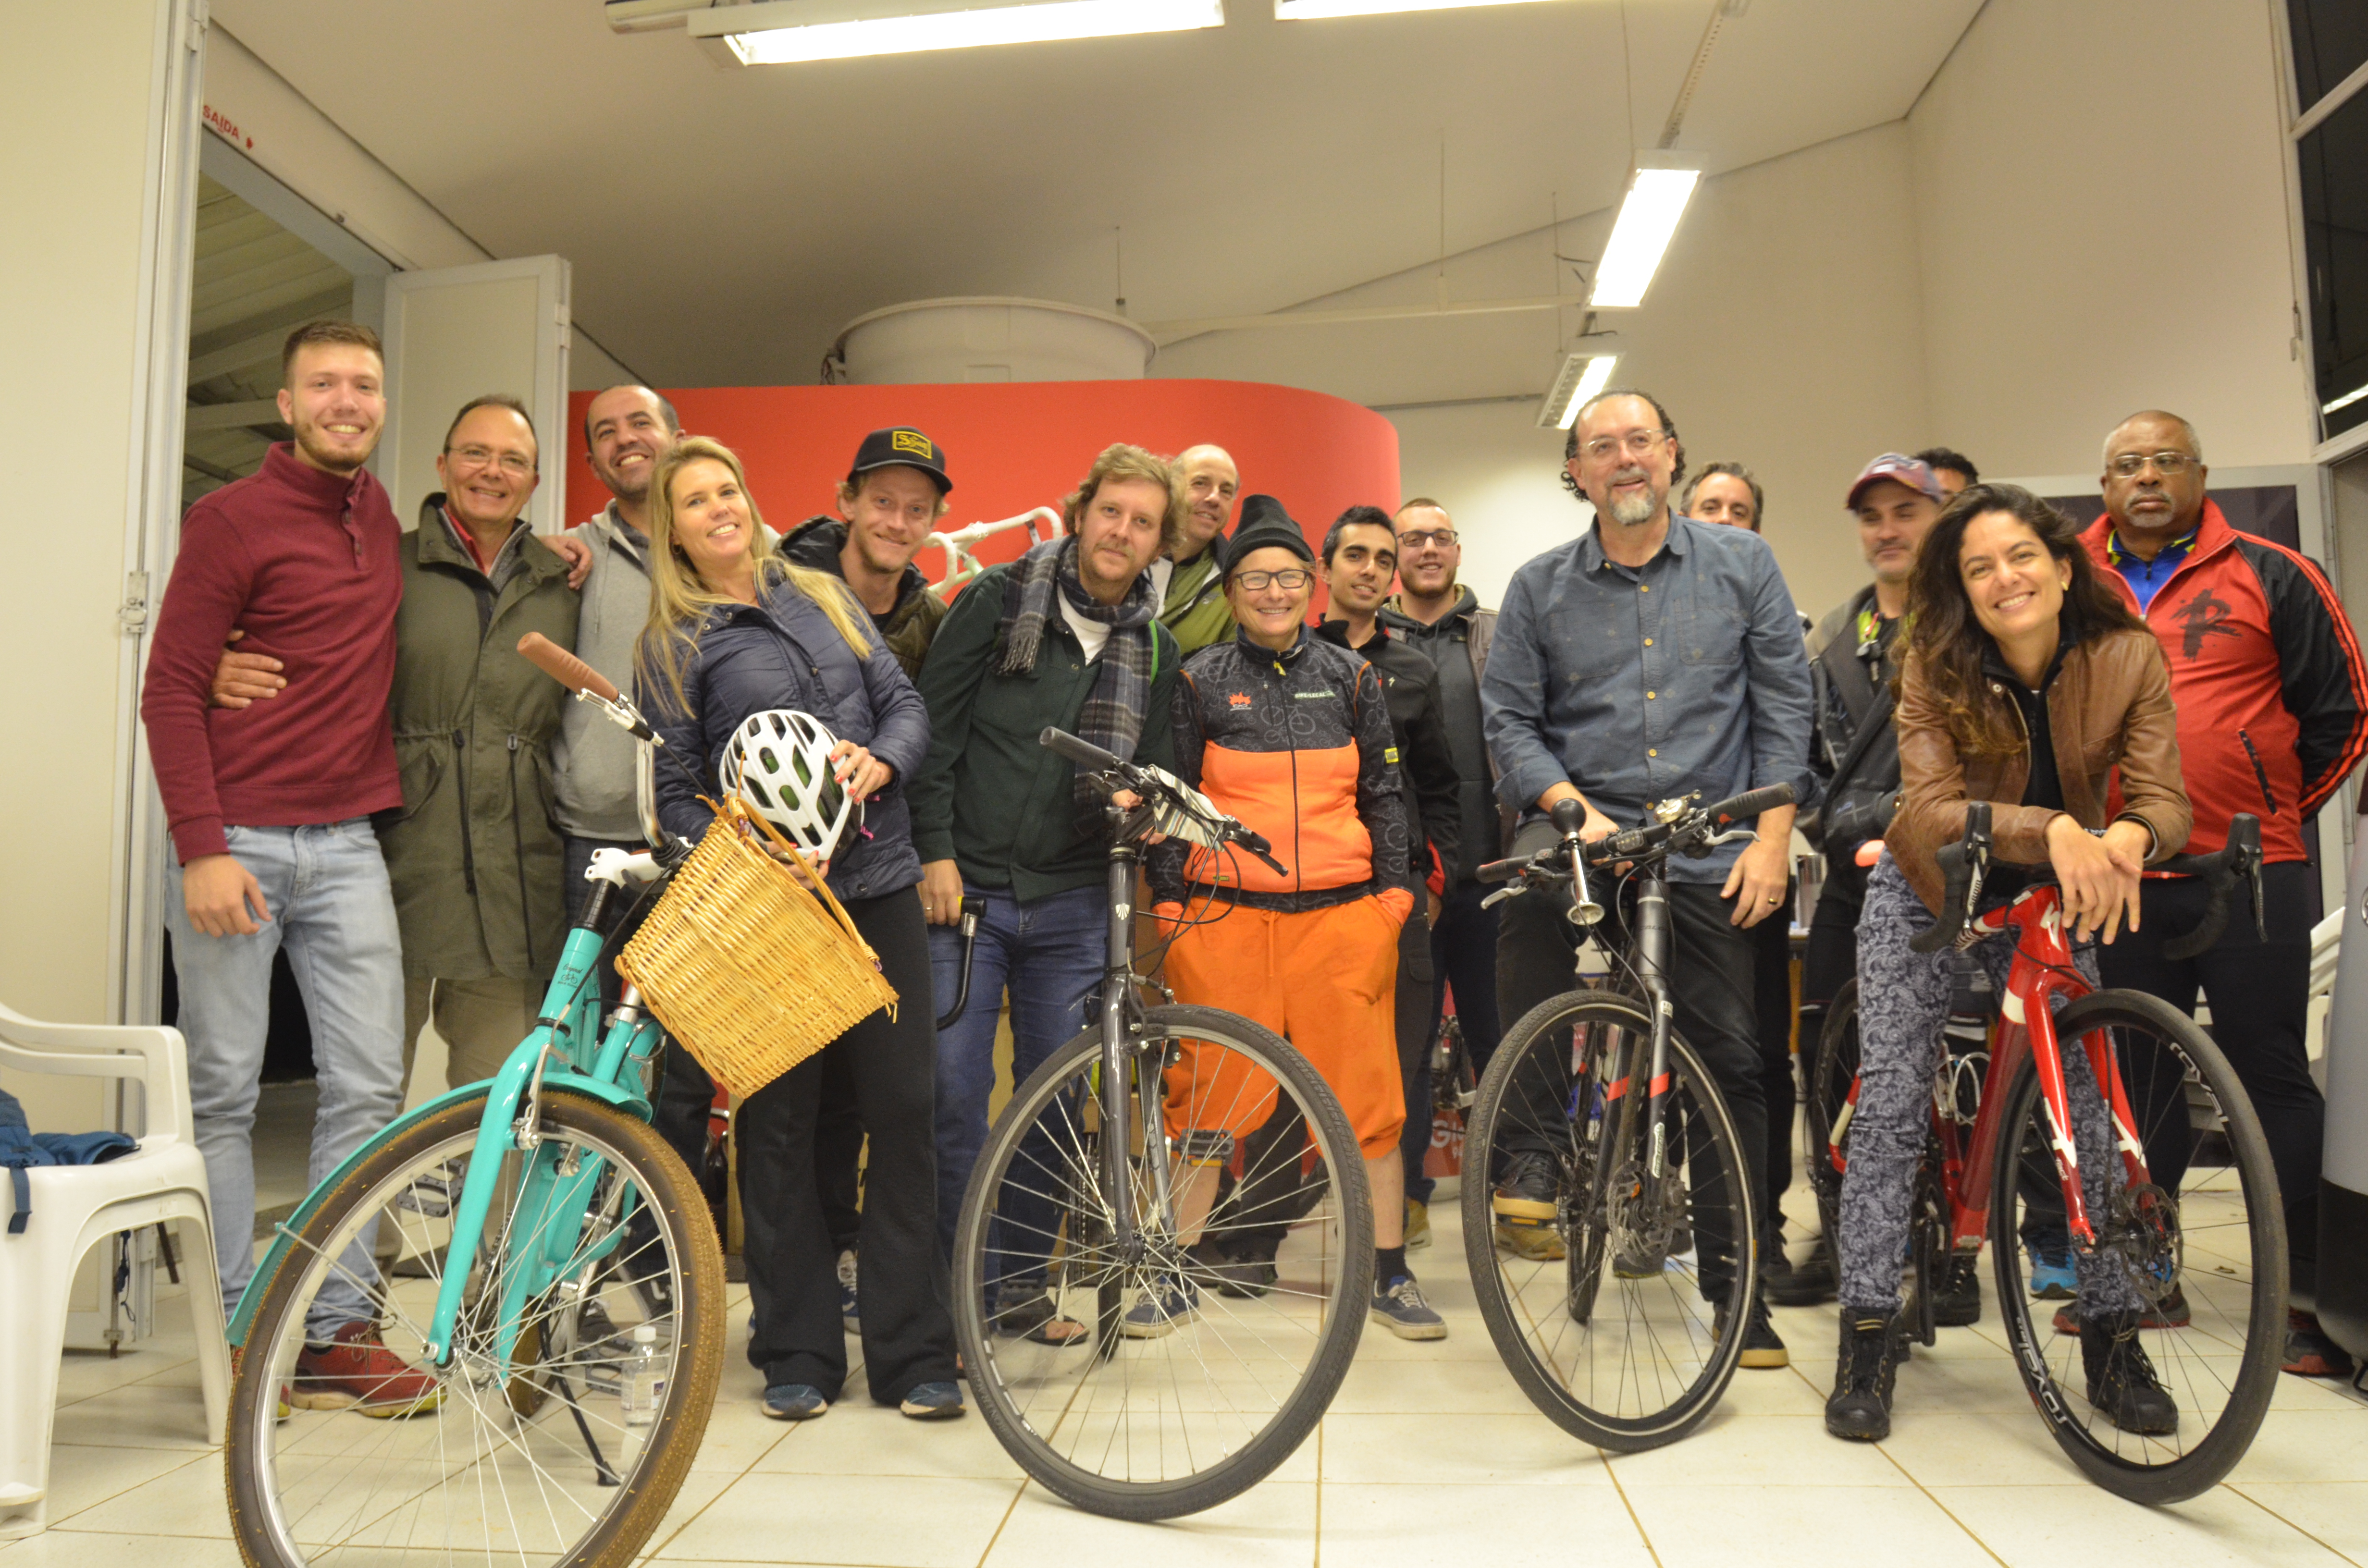 Ciclistas e servidores da Secretaria Municipal de Esportes e Lazer posam para foto com bicicletas dentro de uma sala.